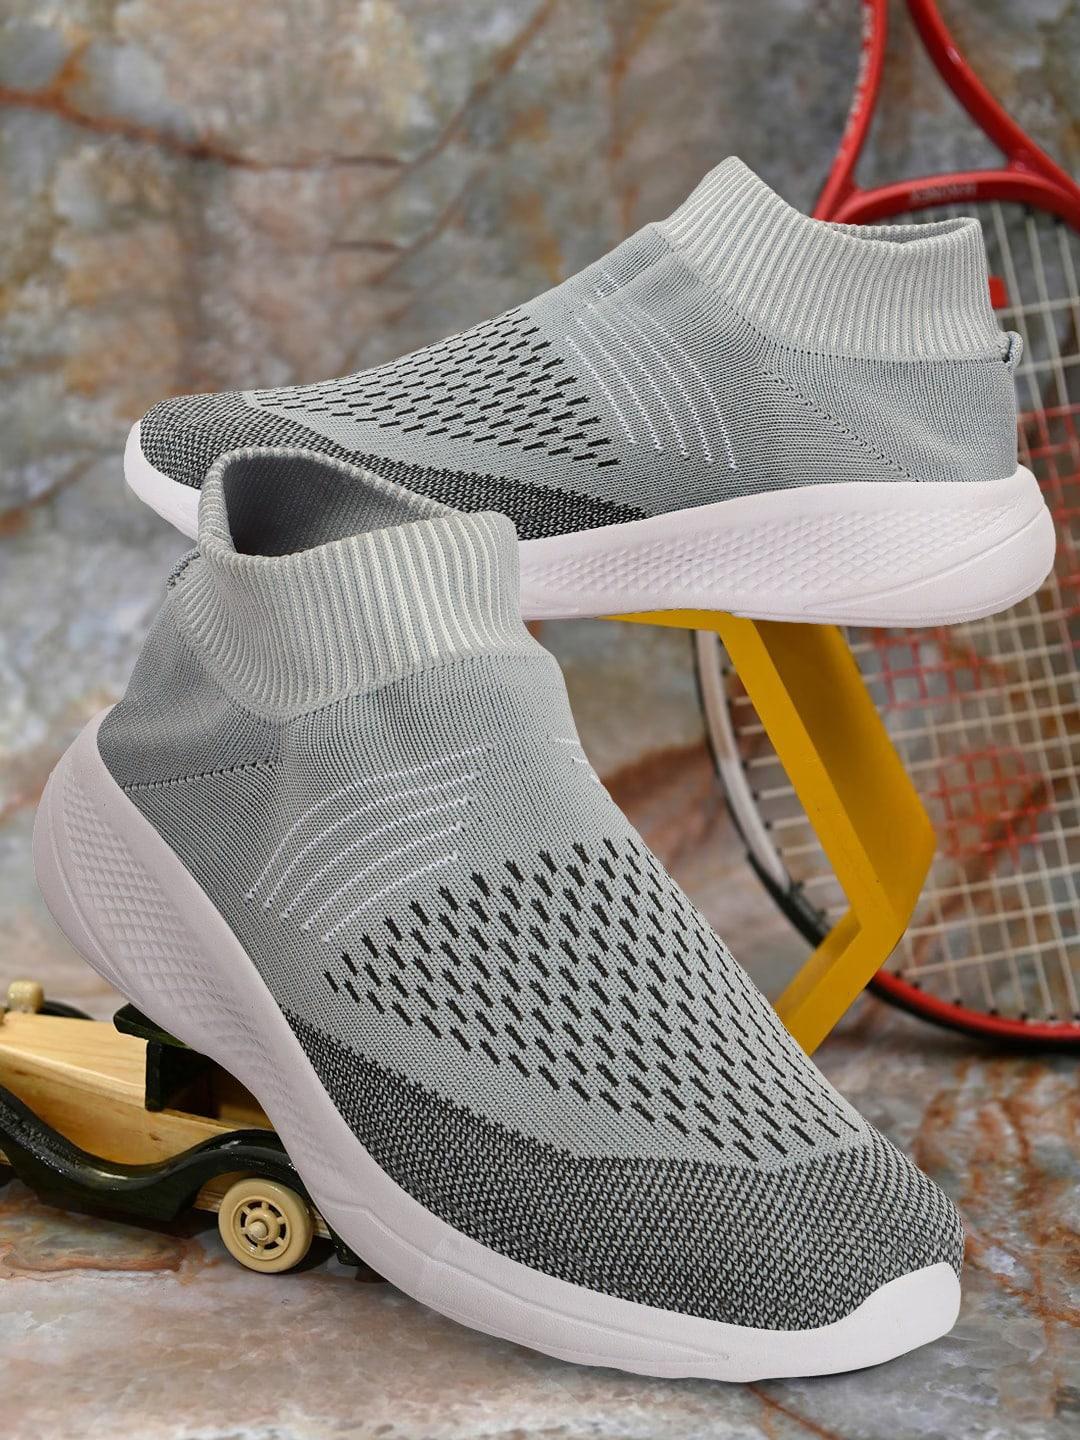 hrx by hrithik roshan men grey woven design lightweight slip on sneakers